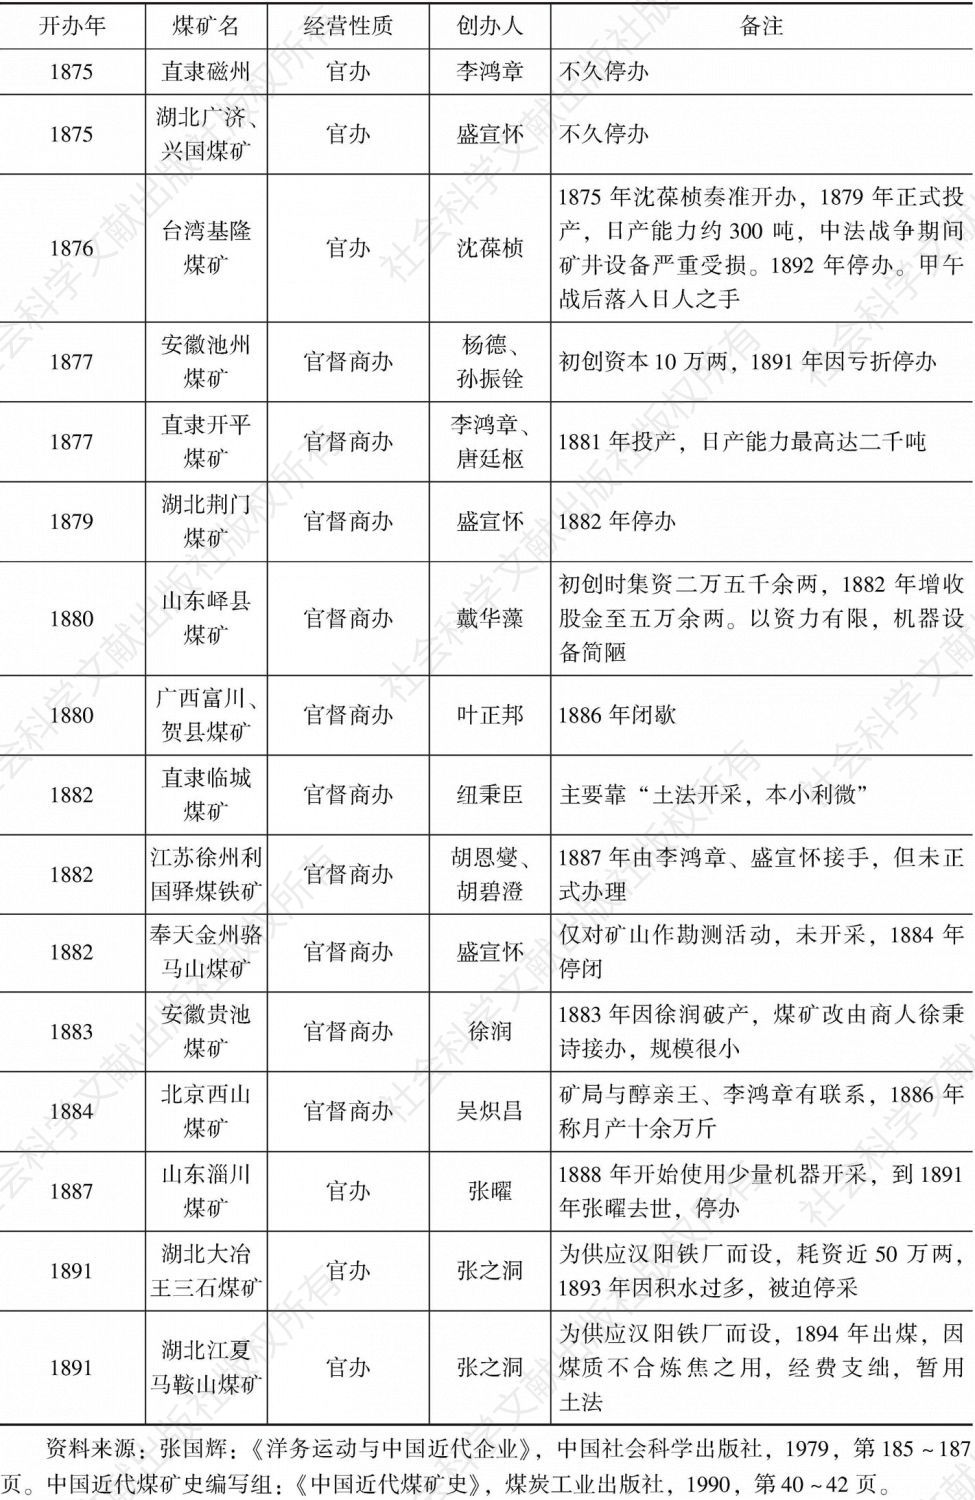 表1 甲午战前中国近代煤矿简况（1875～1895）